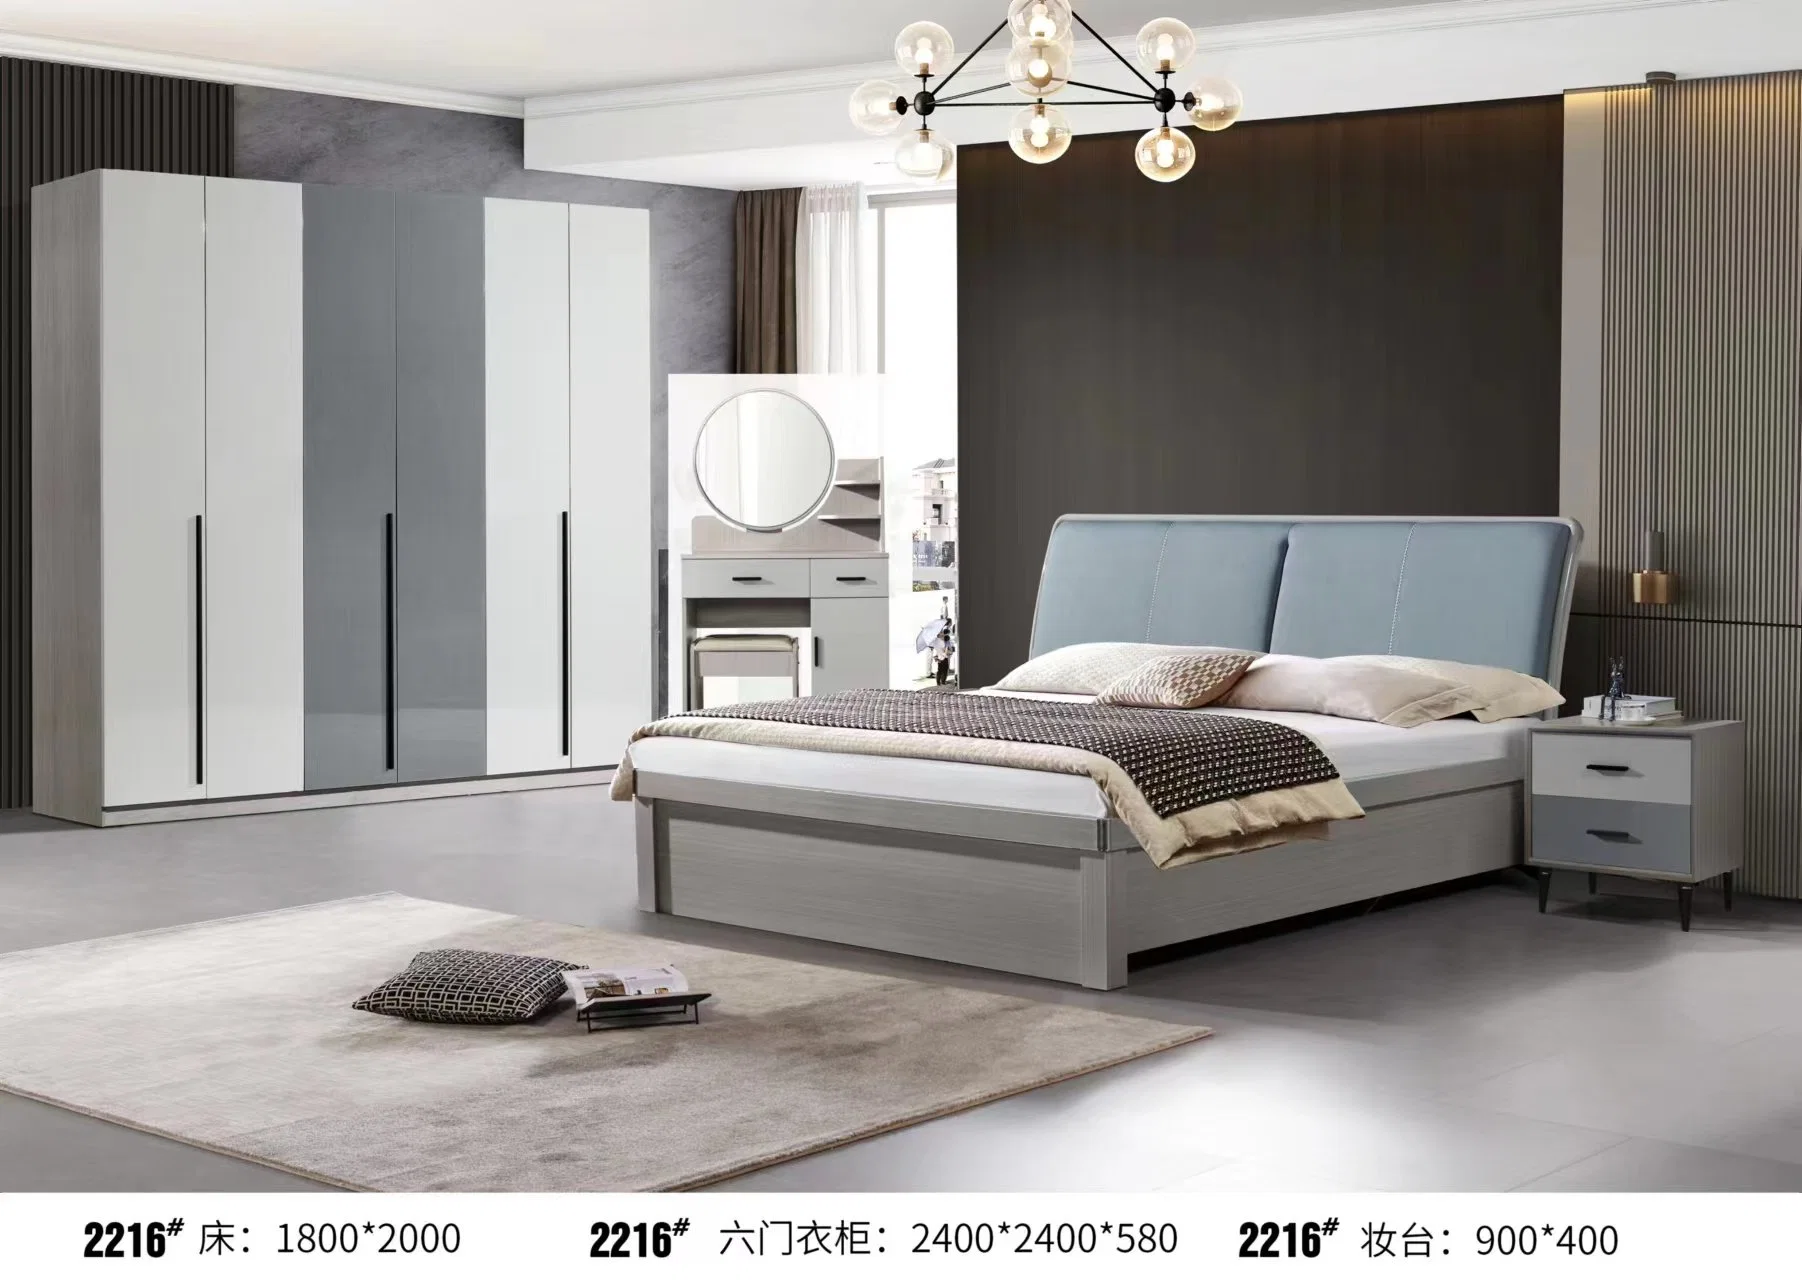 Интерьер Luxury Frame 1.8 M X 2 M Master Bedroom Современная минималистичная двуспальная кровать с минималистичной итальянской спальней